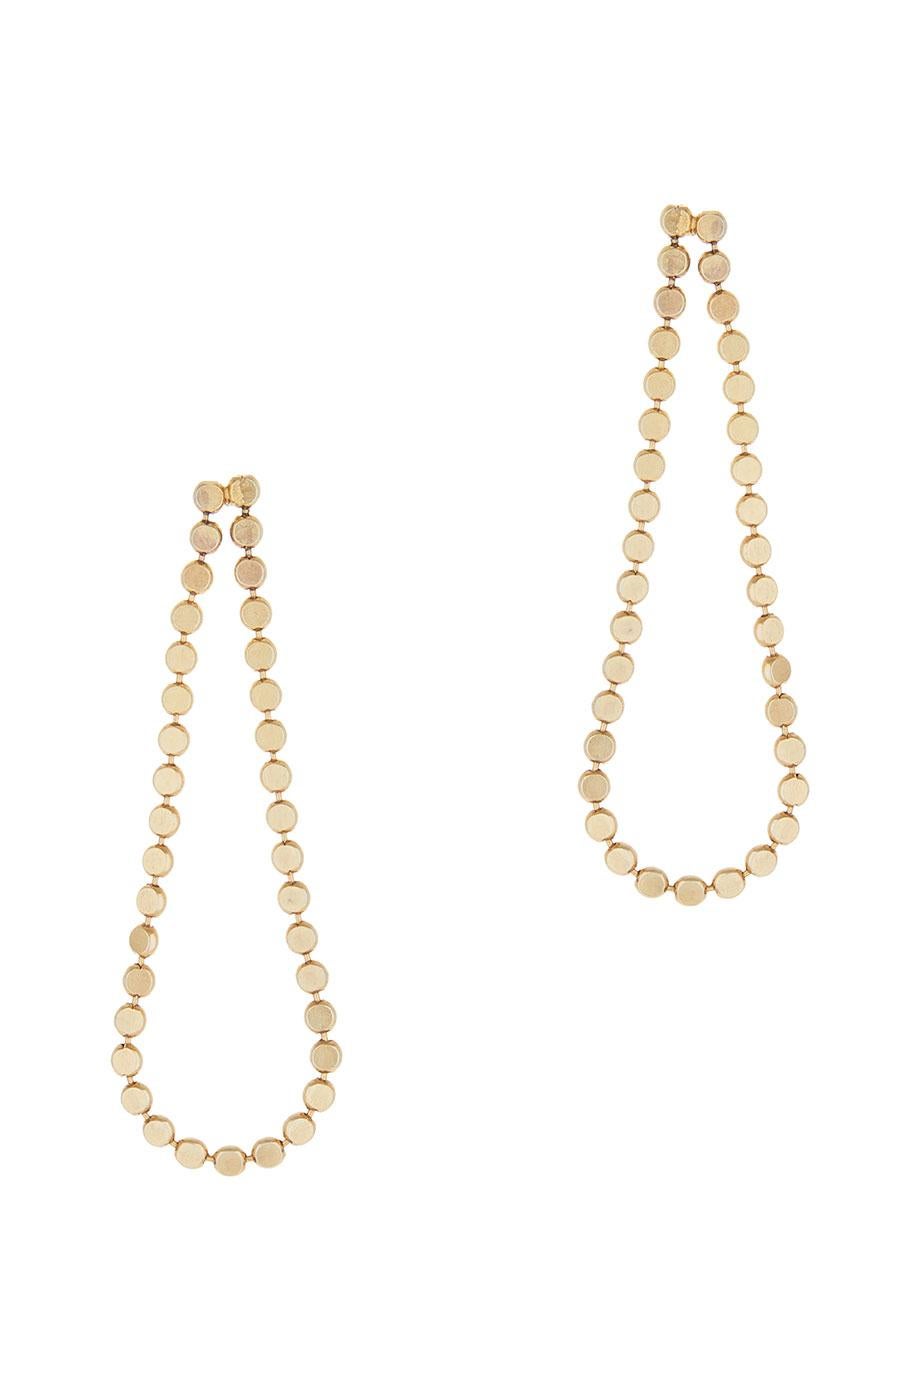 Smart Earrings Long Drop Round Motif Chain 18k Gold-Plated Silver Greek Earrings For Sale 1